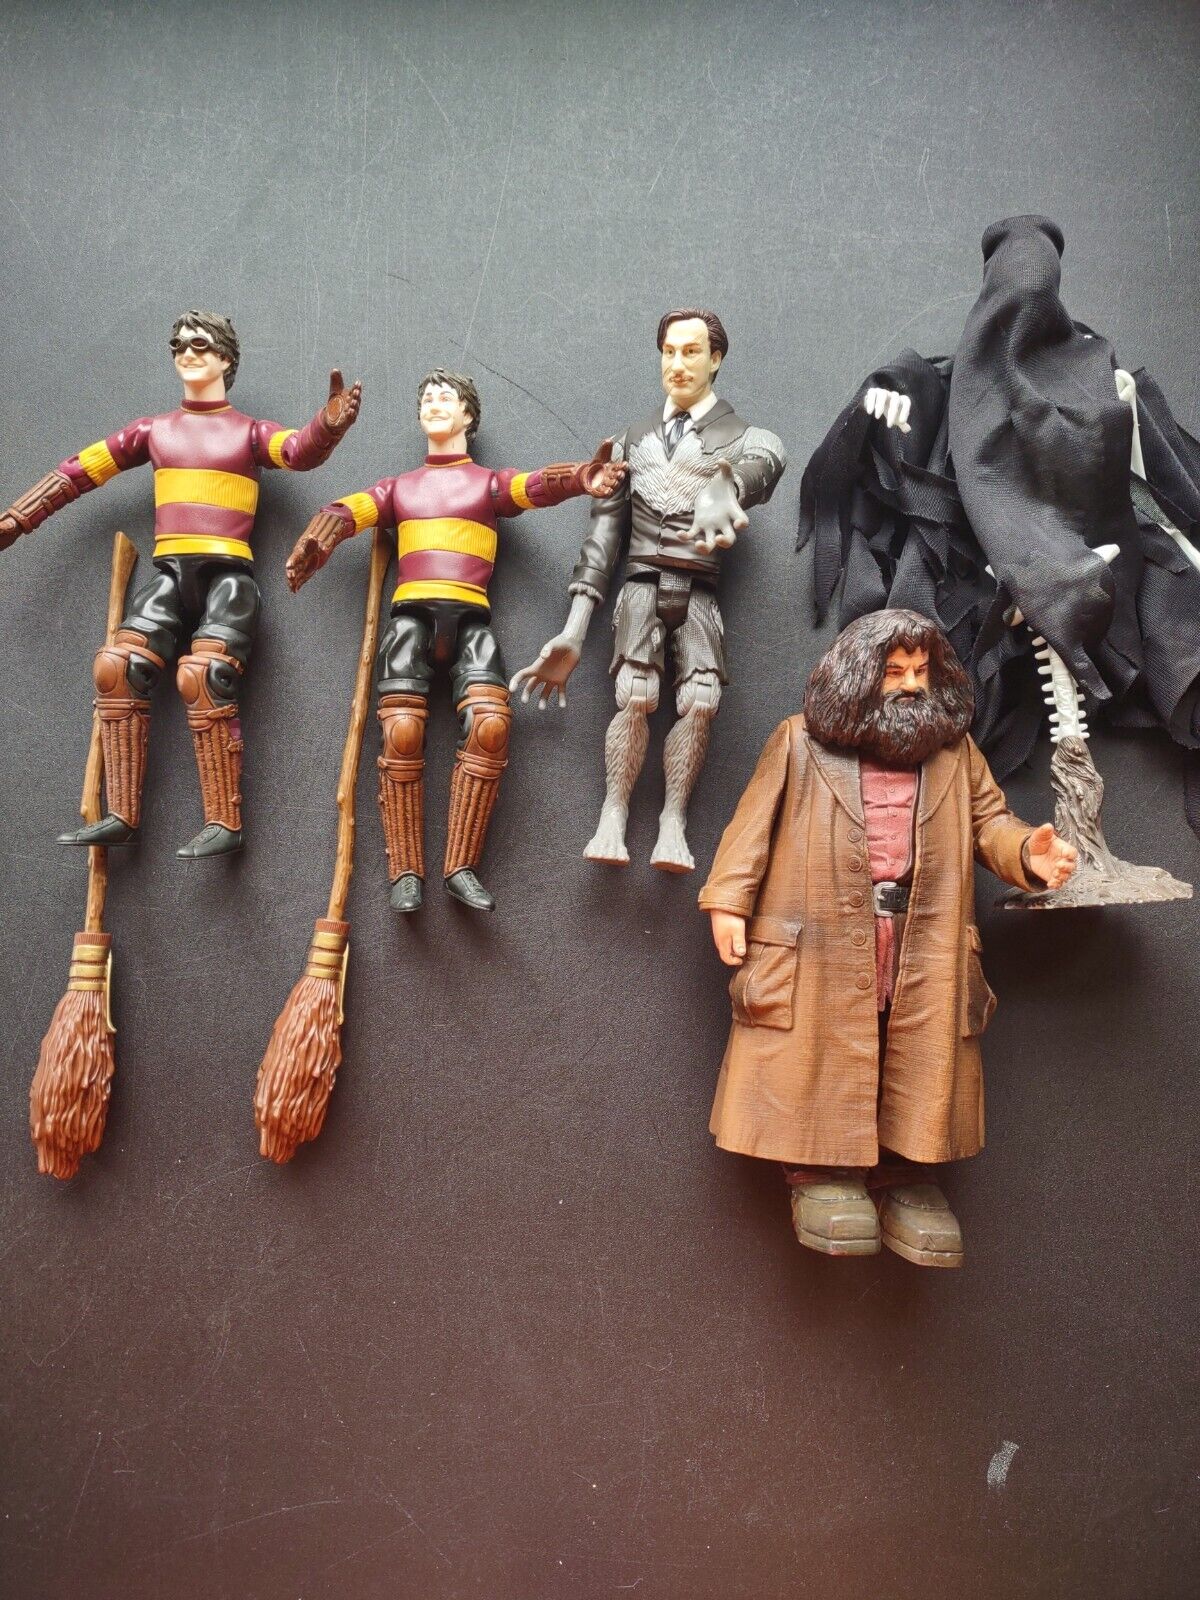 Harry Potter Action Figures 9inch Harry & Hagrid Lot of 5 Mattel/Warner Bros.